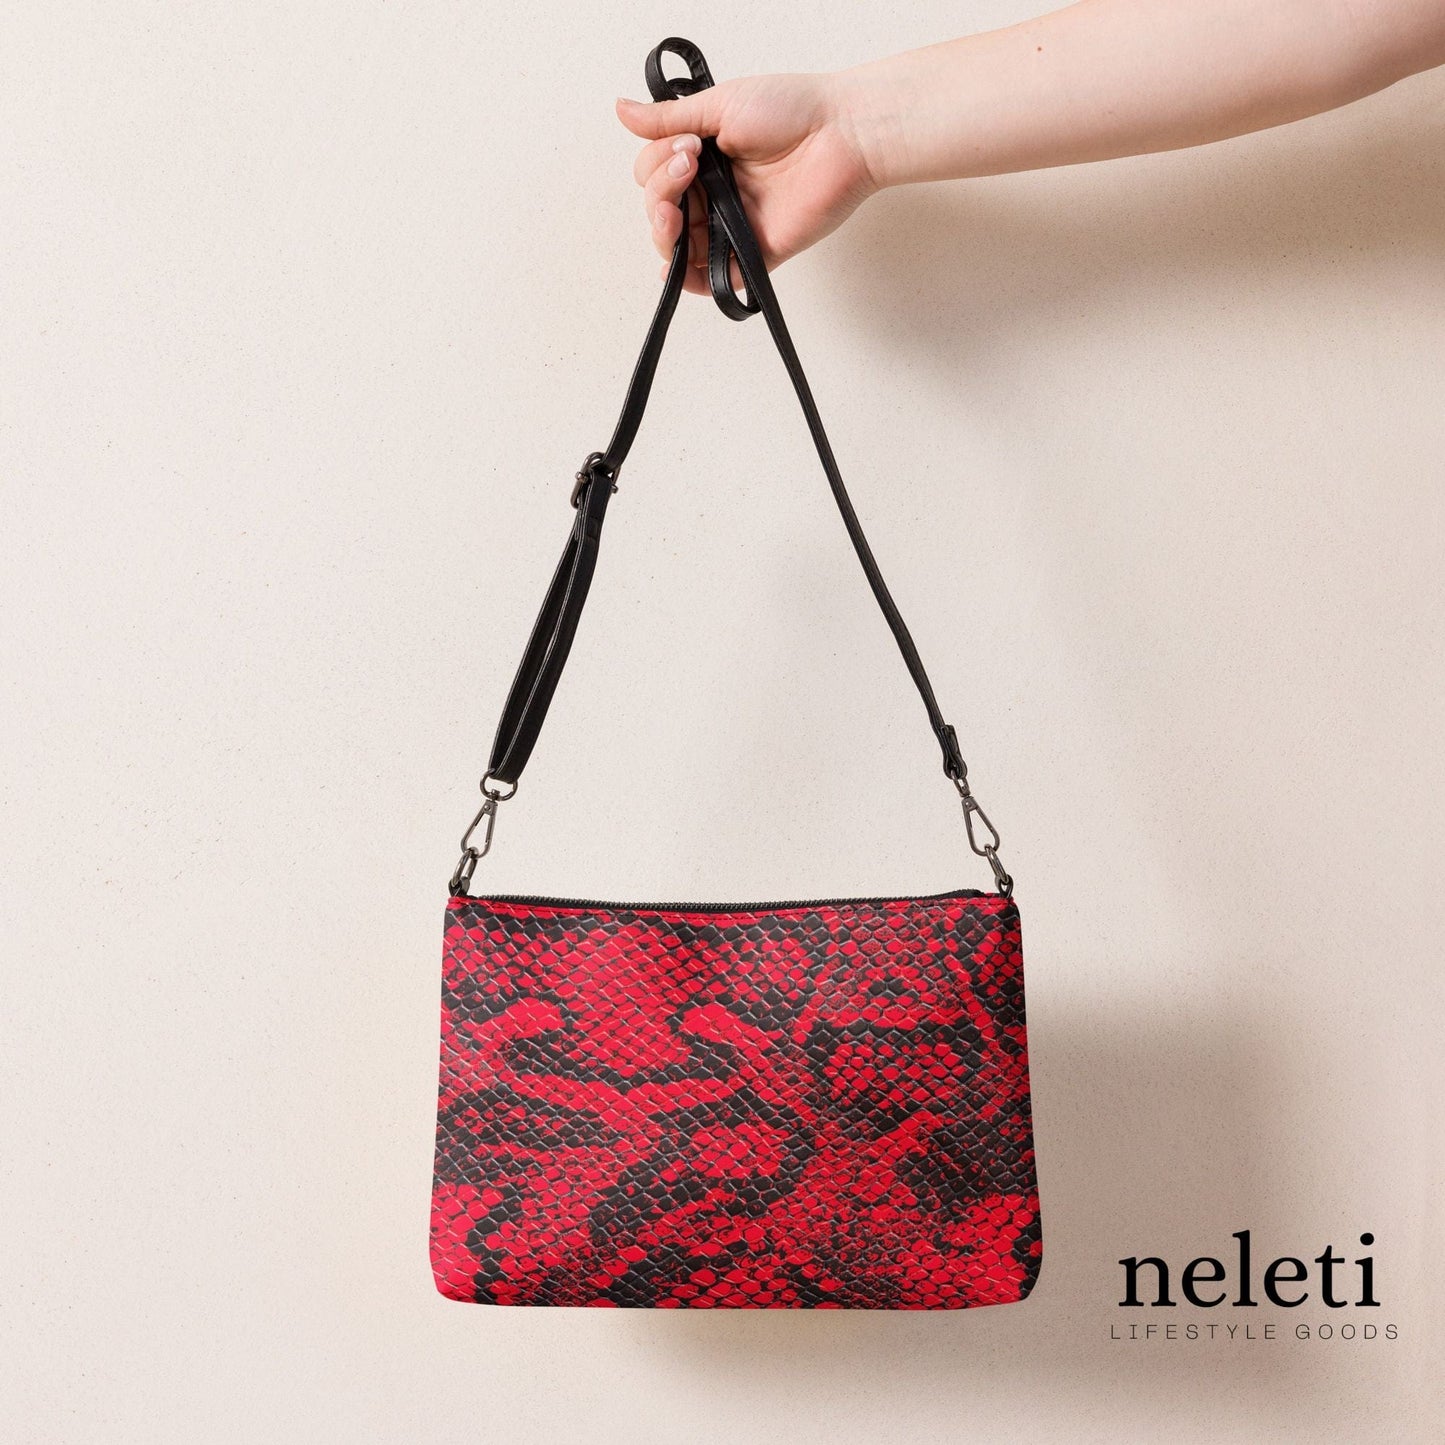 neleti.com-red-crossbody-bag